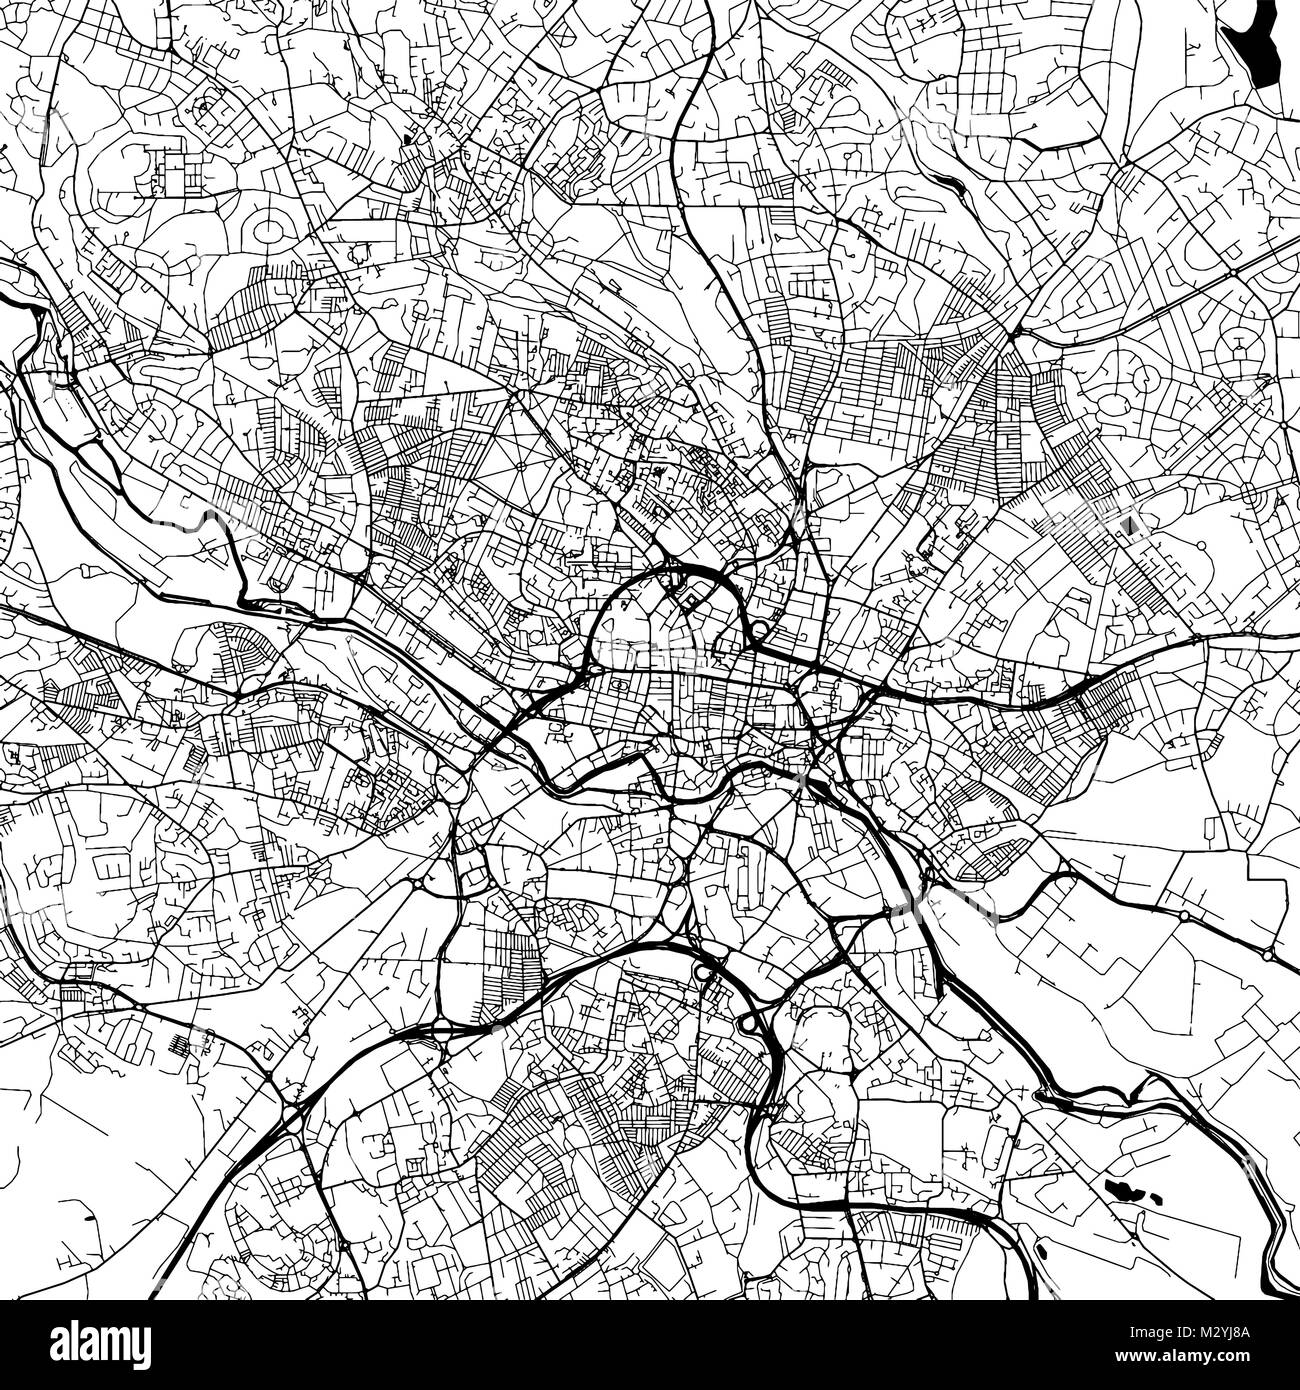 Leeds Downtown Vektorkarte Monochrome Kunstdruck, Outline Version für Infografik Hintergrund, schwarze Straßen und Wasserstraßen Stock Vektor